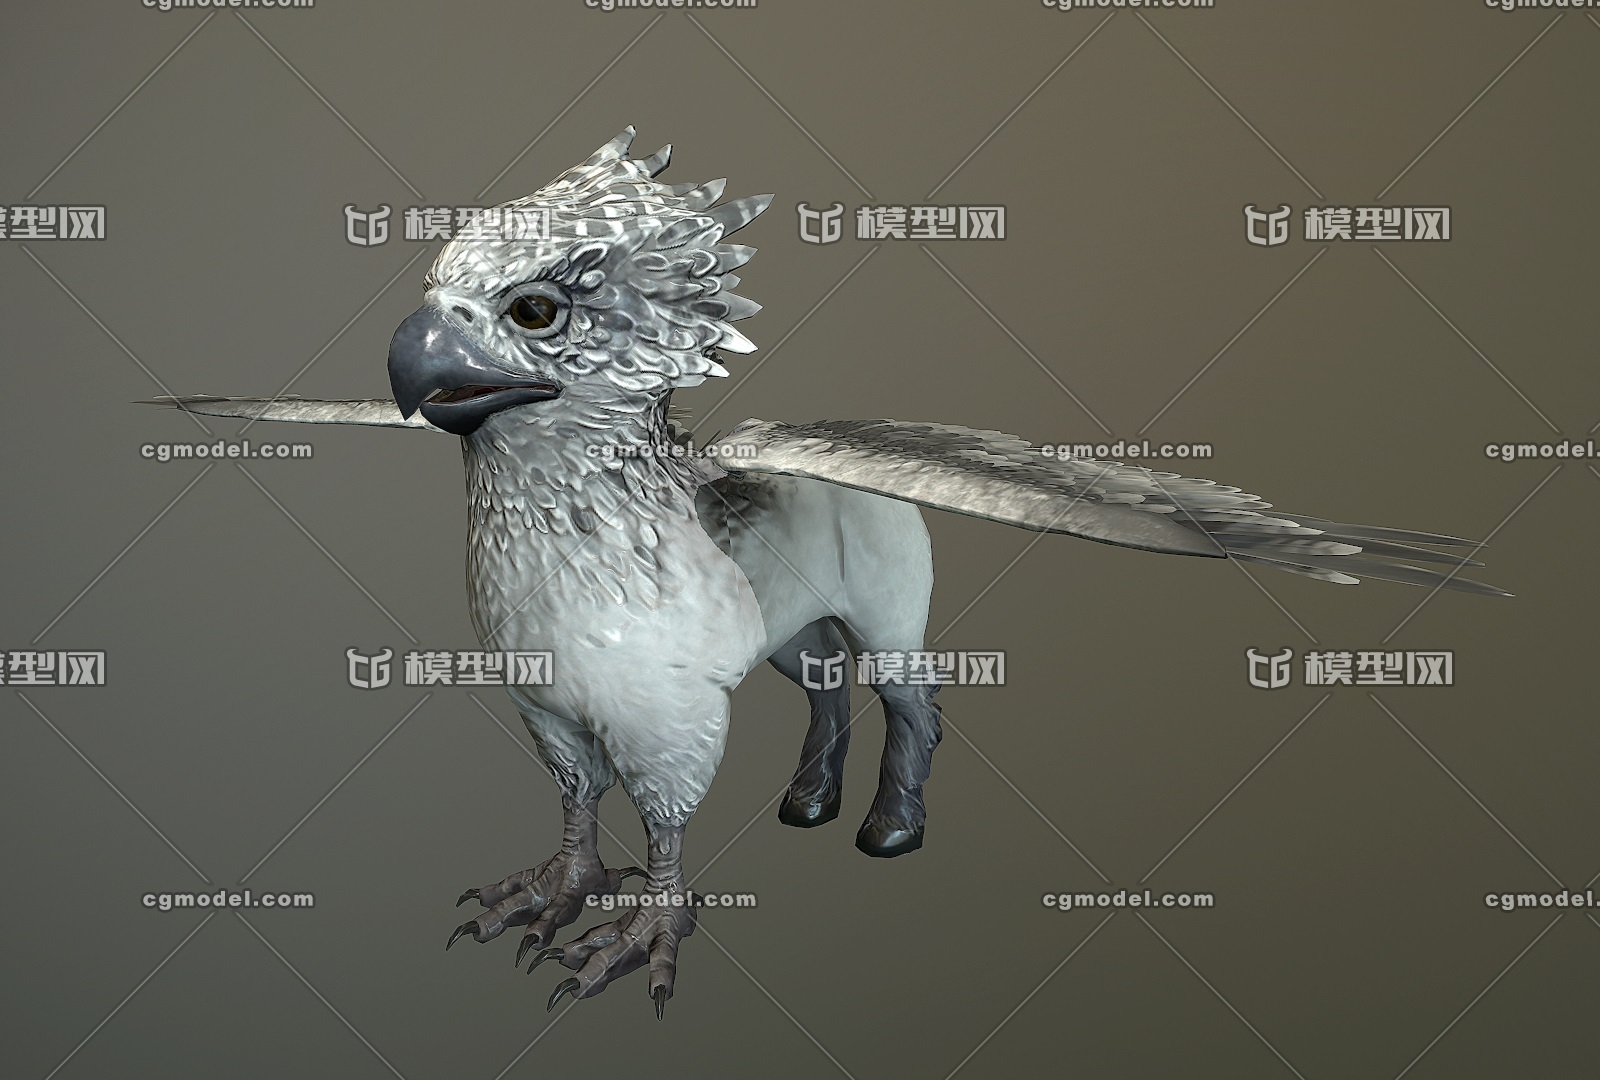 奇幻生物 鹰马兽 幼崽 hippogriff 鹰头马身有翼兽 次世代 神话